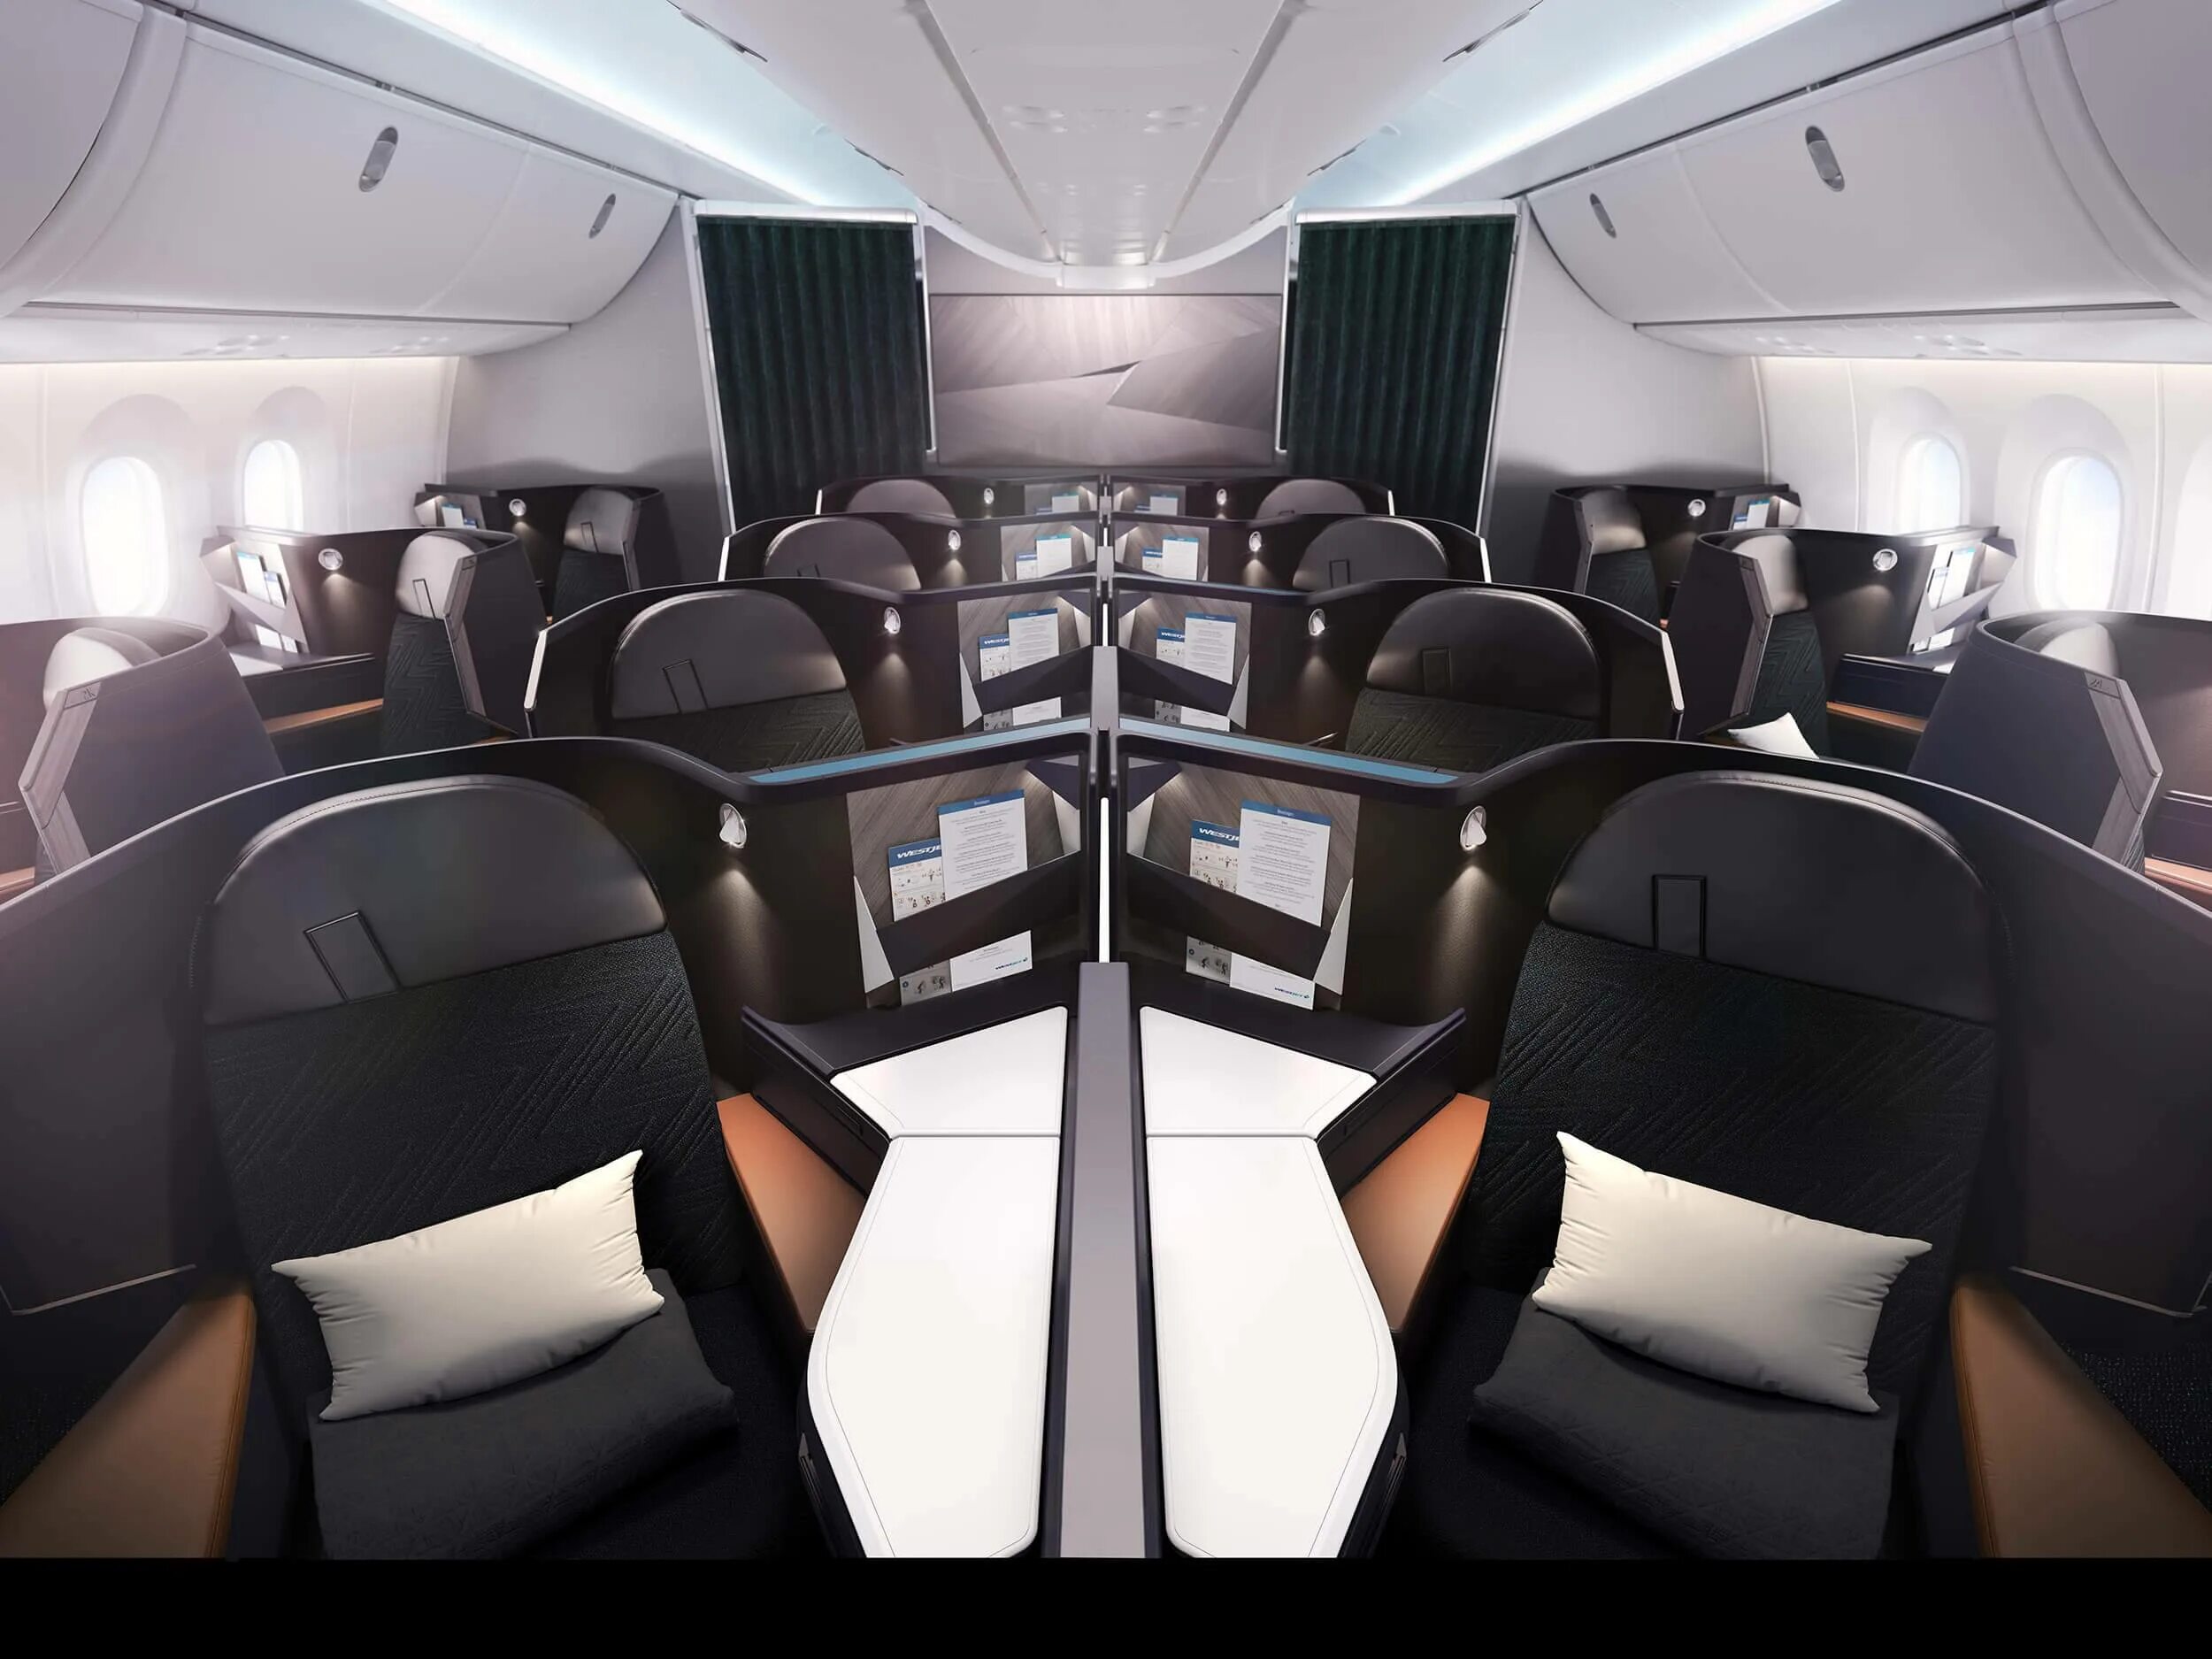 Dreamliner 787 Seats. Boeing 787 Dreamliner Business class Interior. 787 Dreamliner first class. WESTJET Business class. Бизнес класс школа